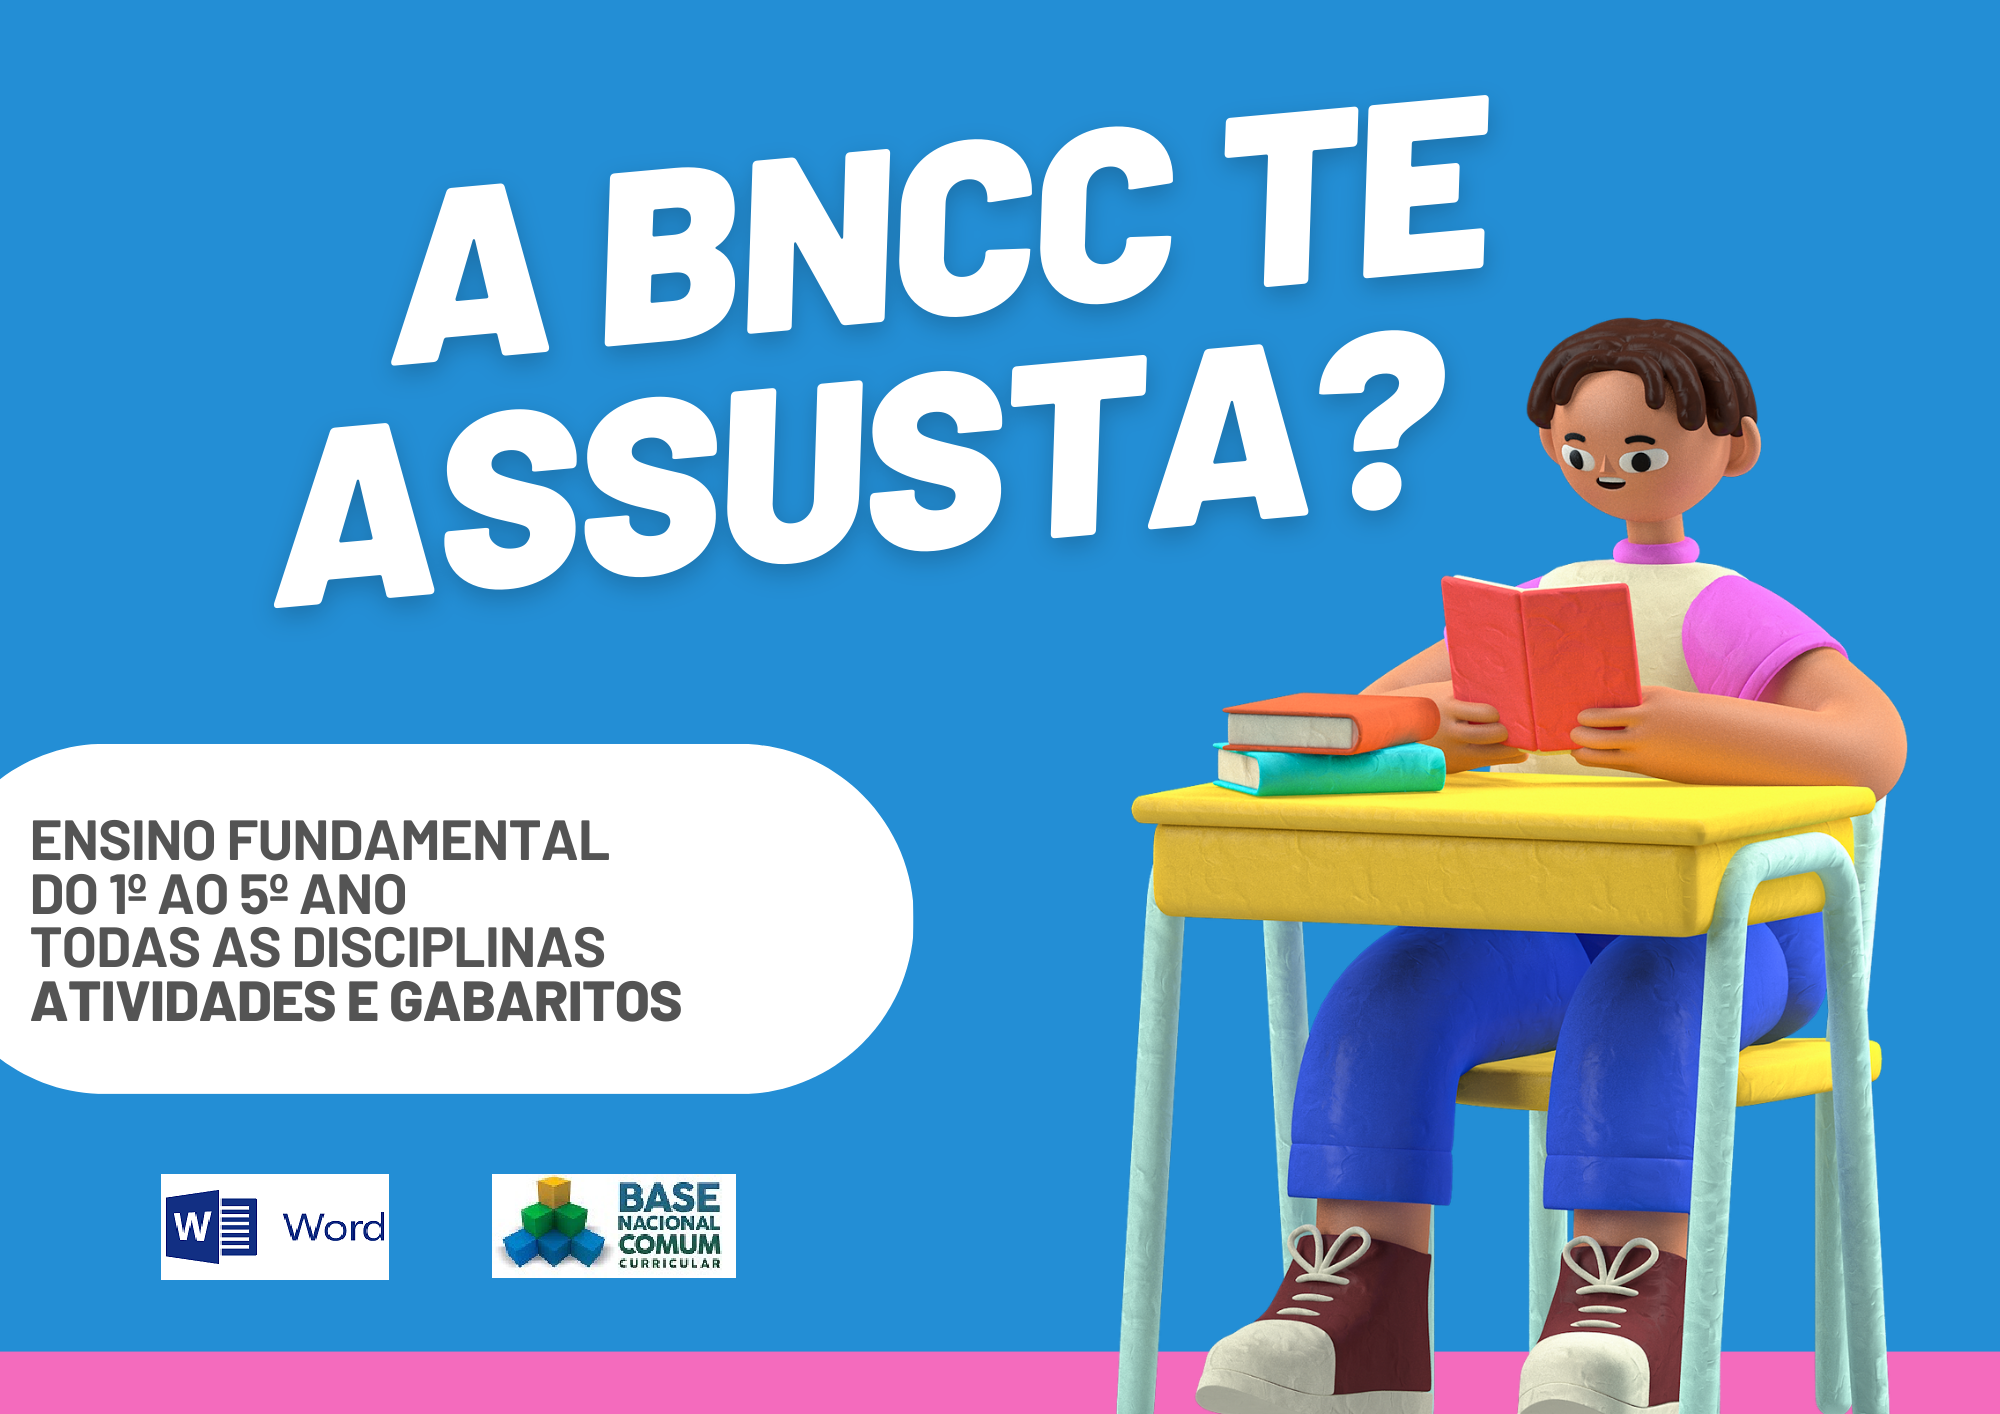 A BNCC te assusta ensino fundamental do 1º ao 5º ano todas as disciplinas atividades e gabaritos com um aluno segurando um livro e os símbolos do Word e da BNCC